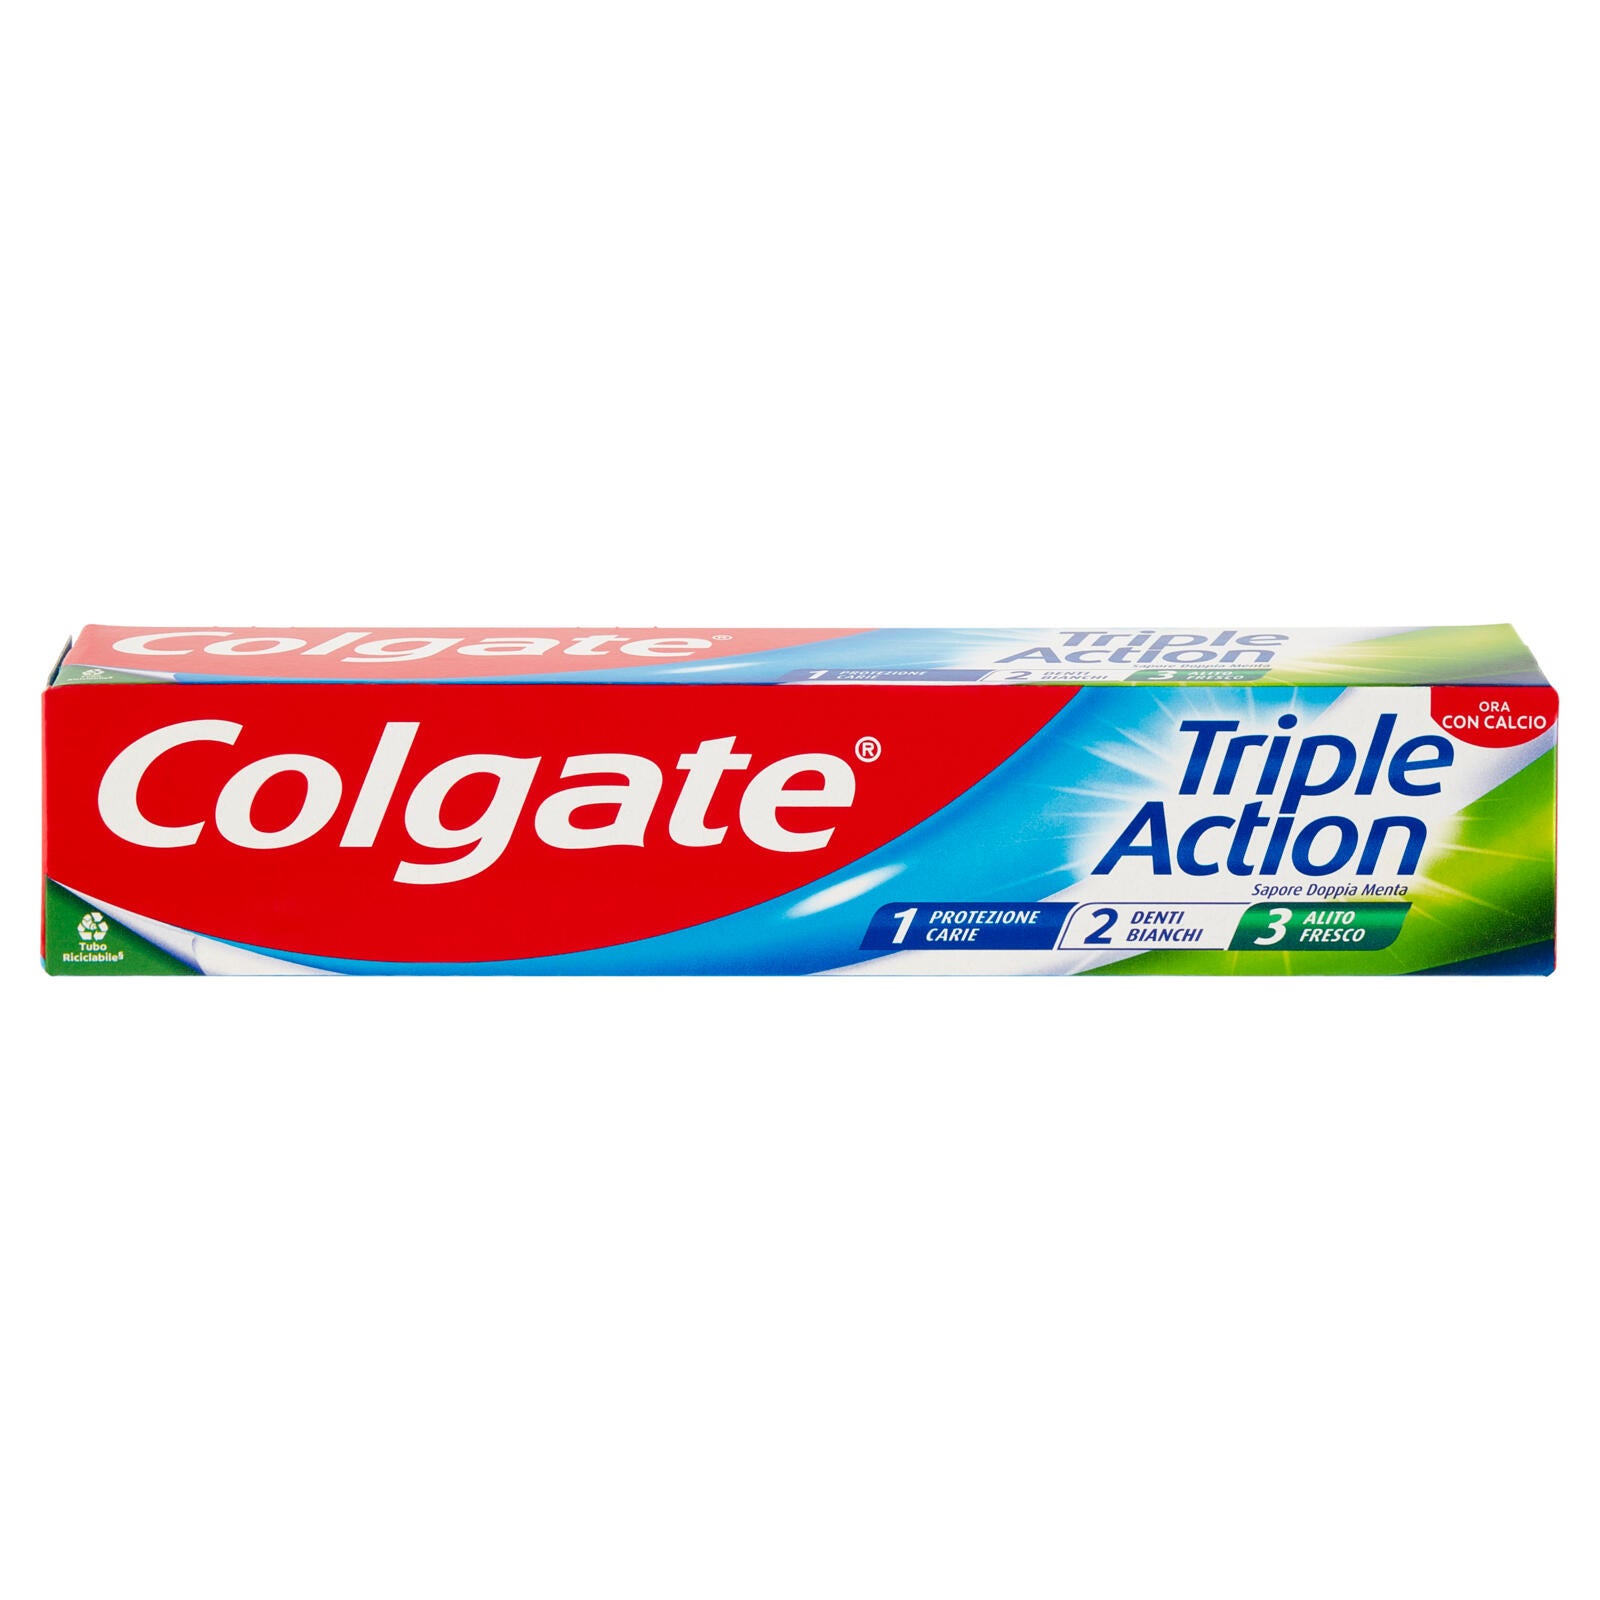 Colgate dentifricio Triple Action protezione carie 75 ml